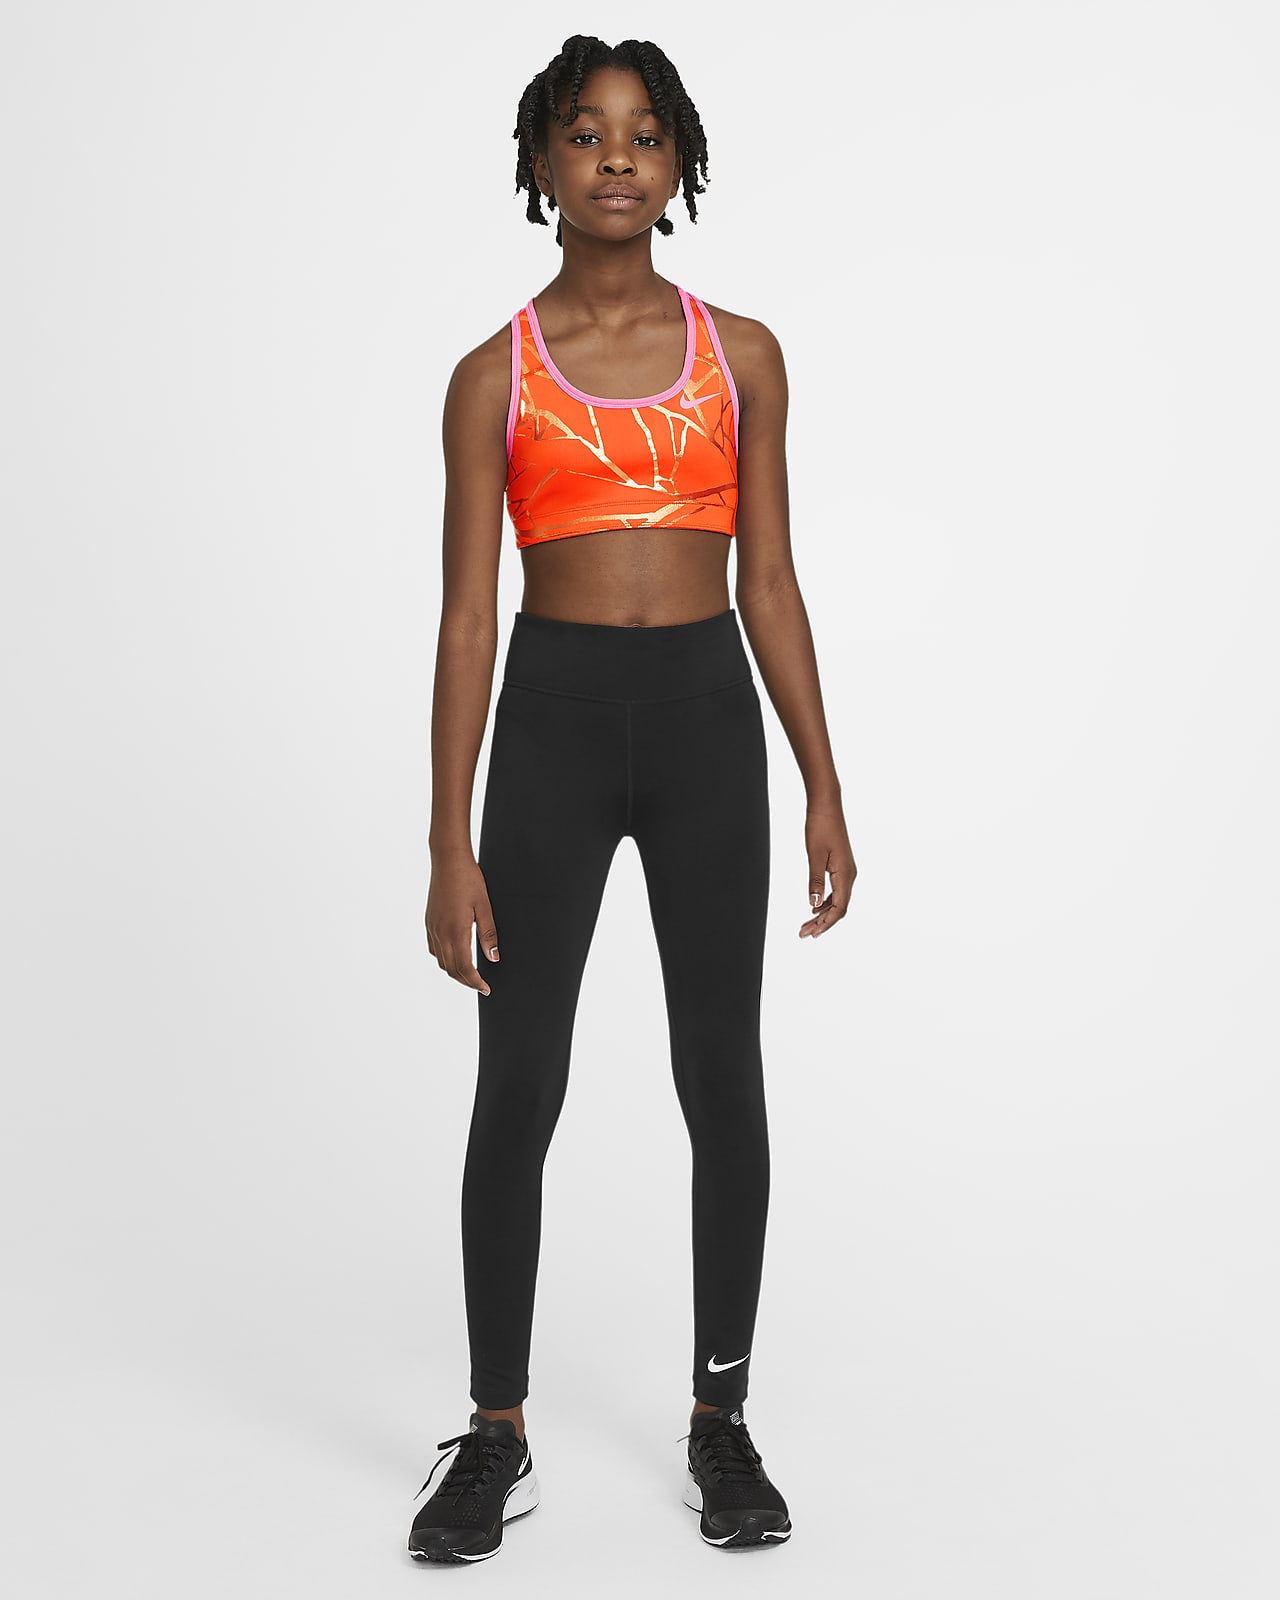 New Nike Girls' Seamless Sports Bra Dri-FIT technology ZS-Small